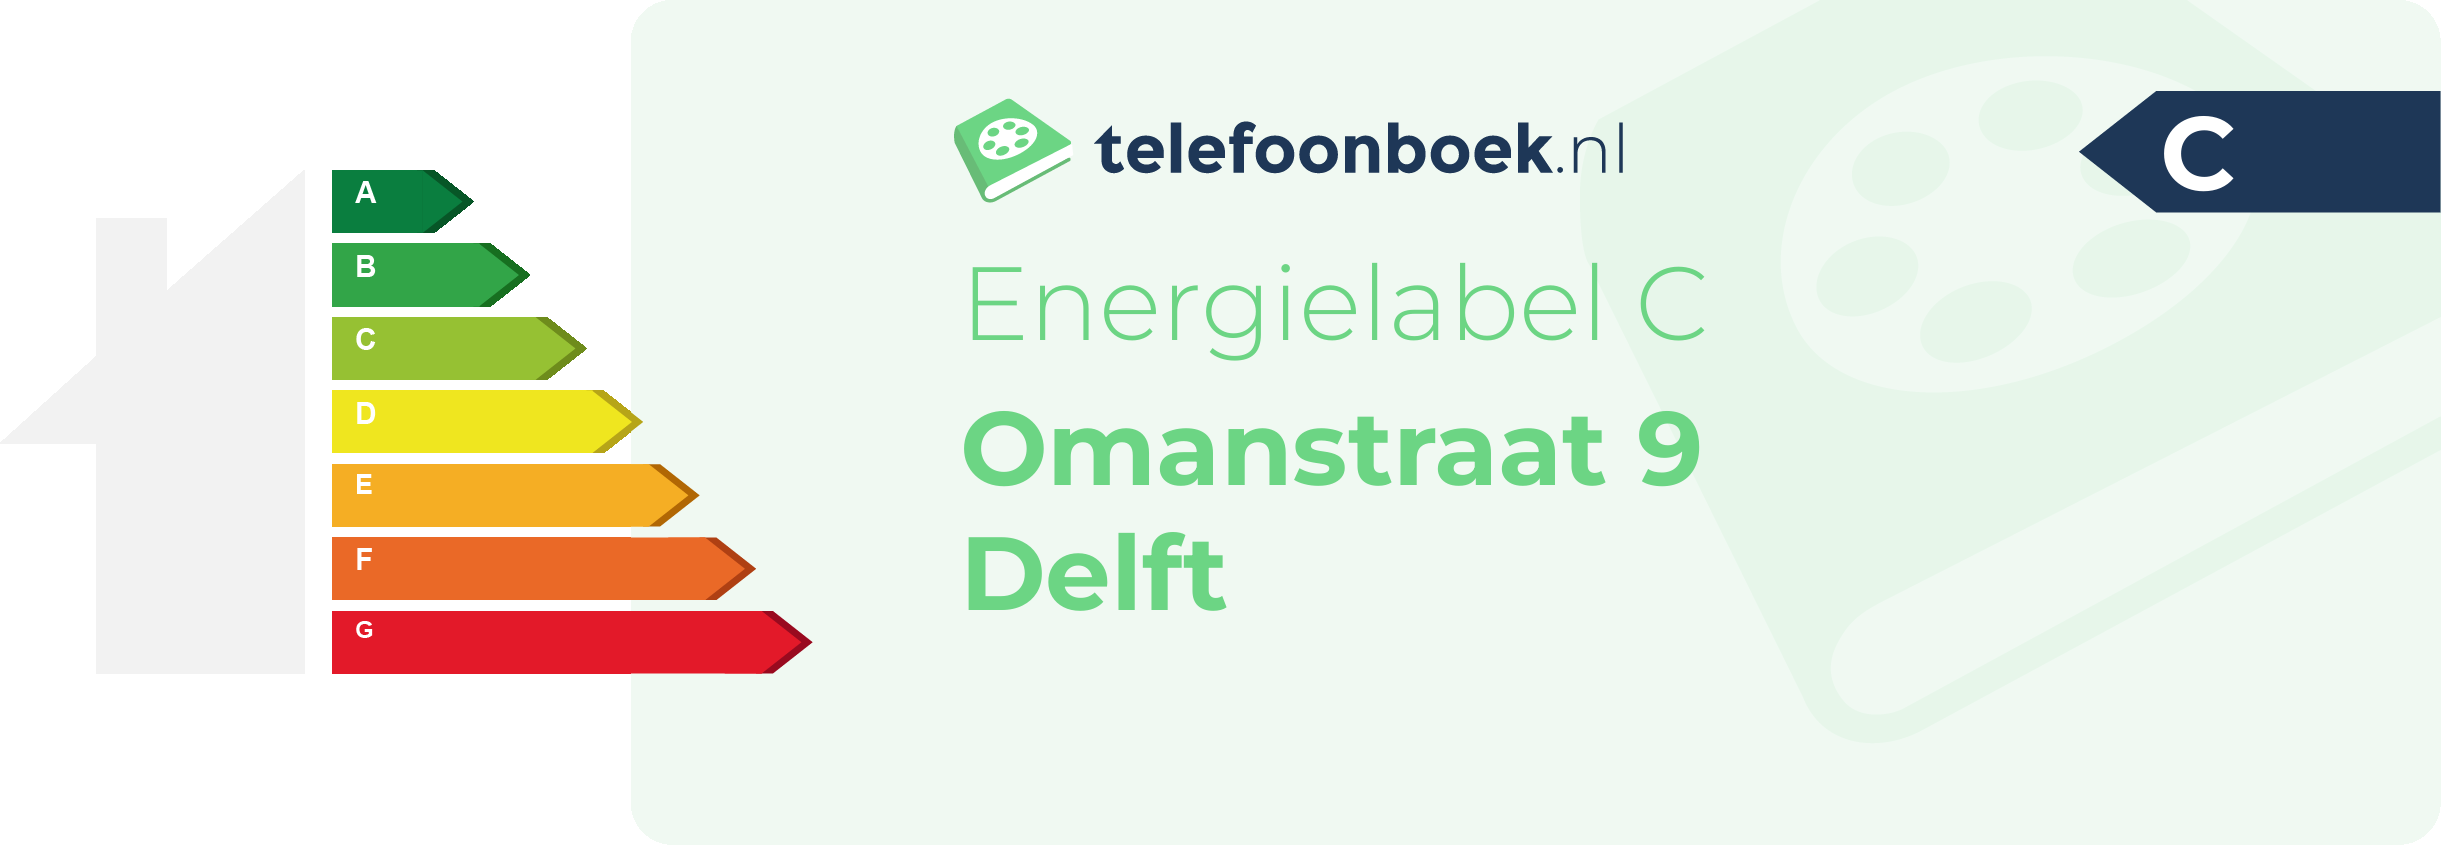 Energielabel Omanstraat 9 Delft